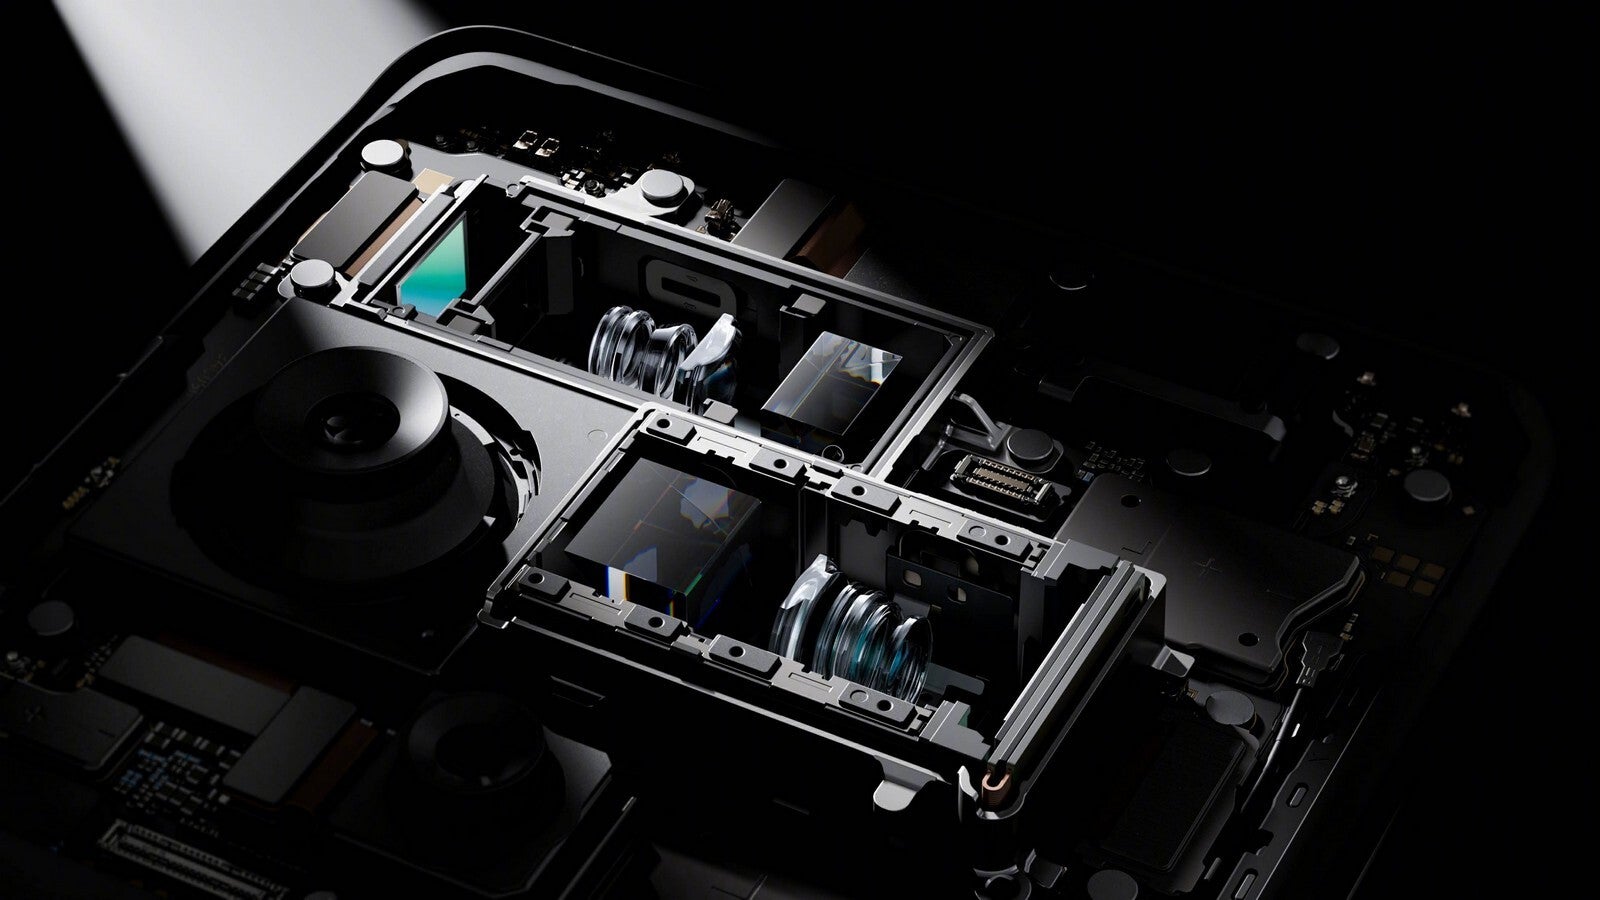 Find X7 Ultra, çift periskop yakınlaştırma kamerasına sahip bir ilktir - Oppo Find X7 Ultra, muhteşem HyperTone setindeki İKİ periskop yakınlaştırma kamerasıyla S24 Ultra'ya rakip oluyor